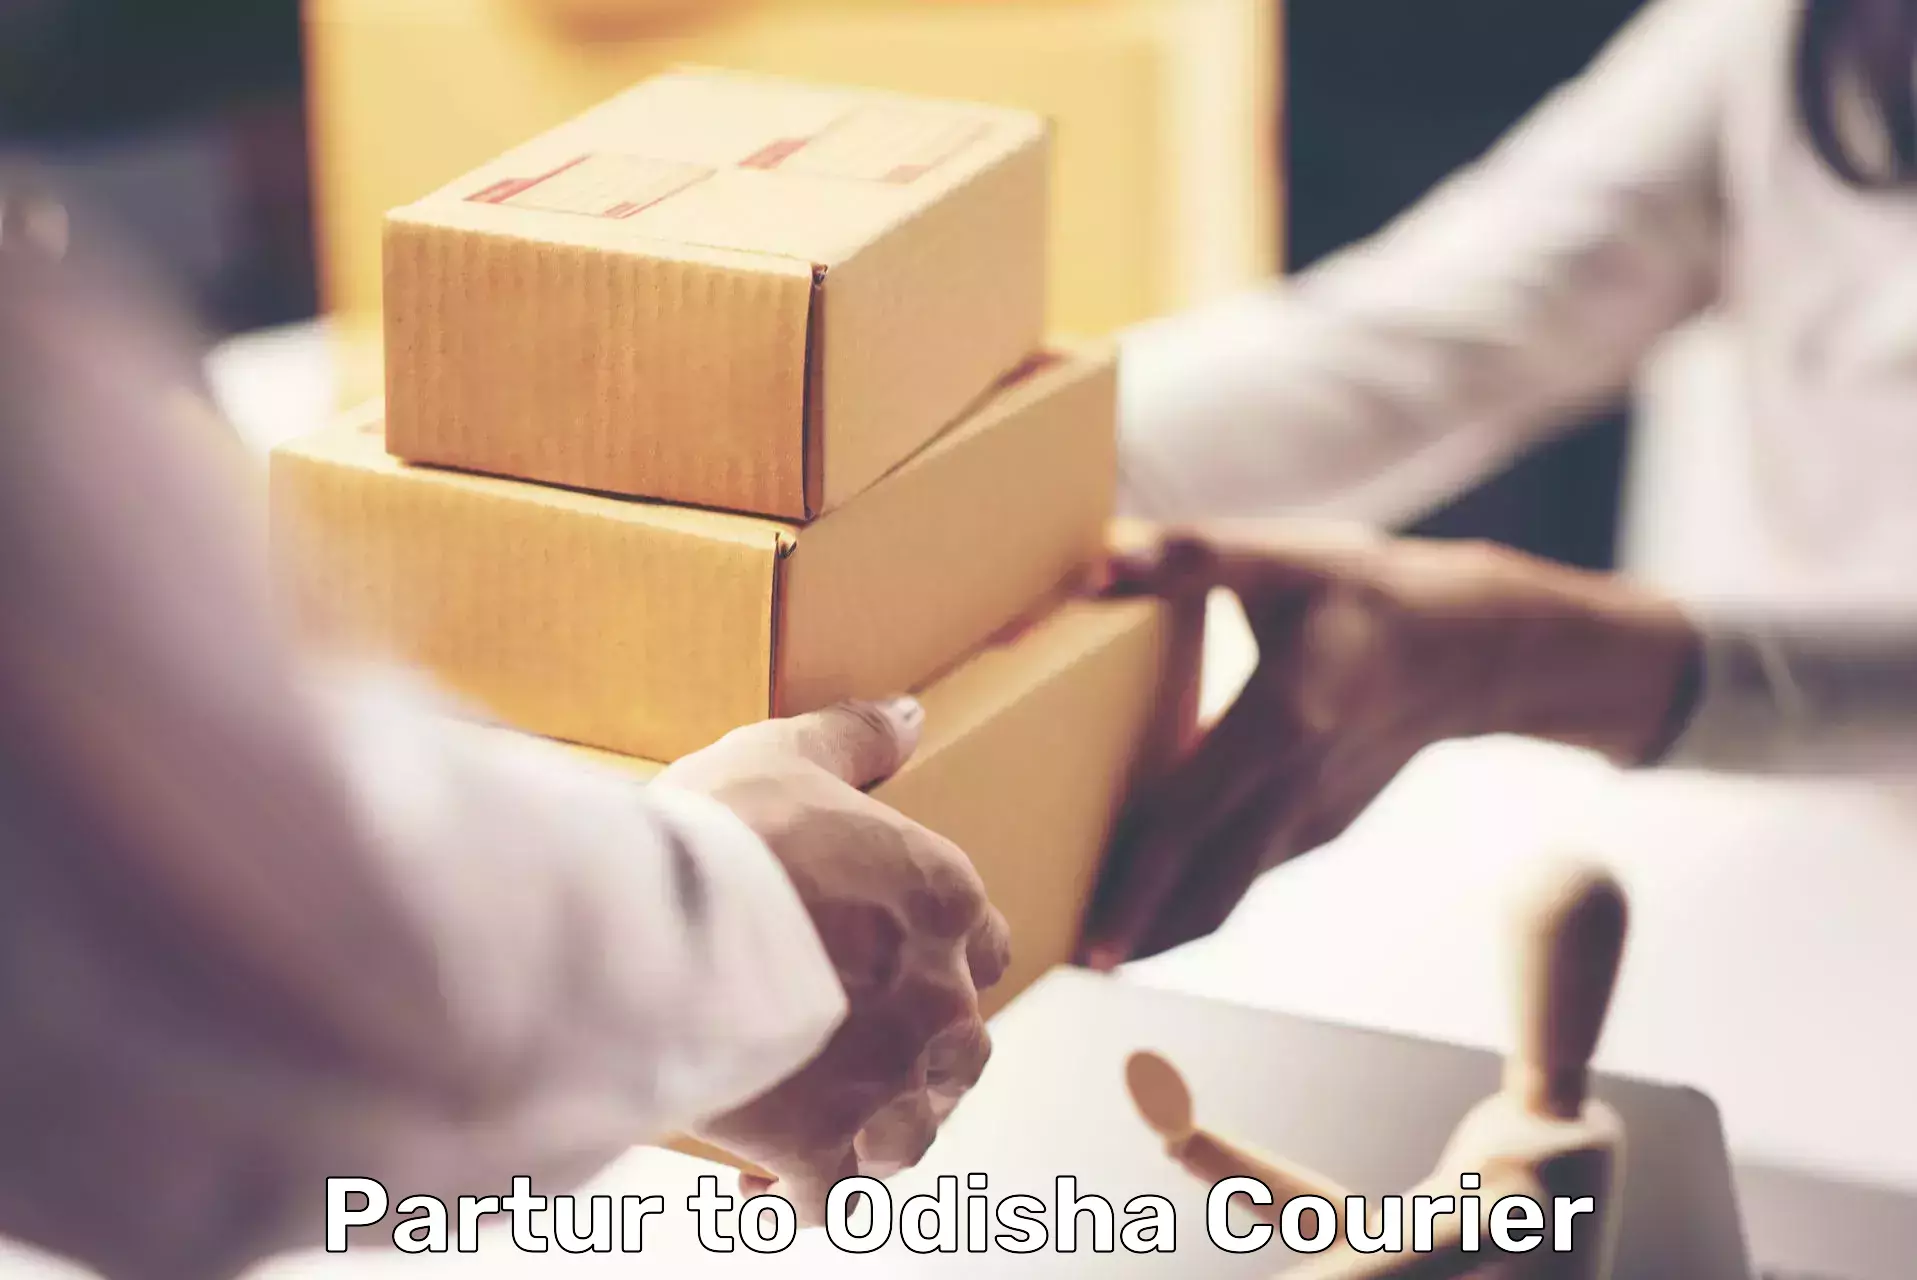 Efficient logistics management Partur to Mohana